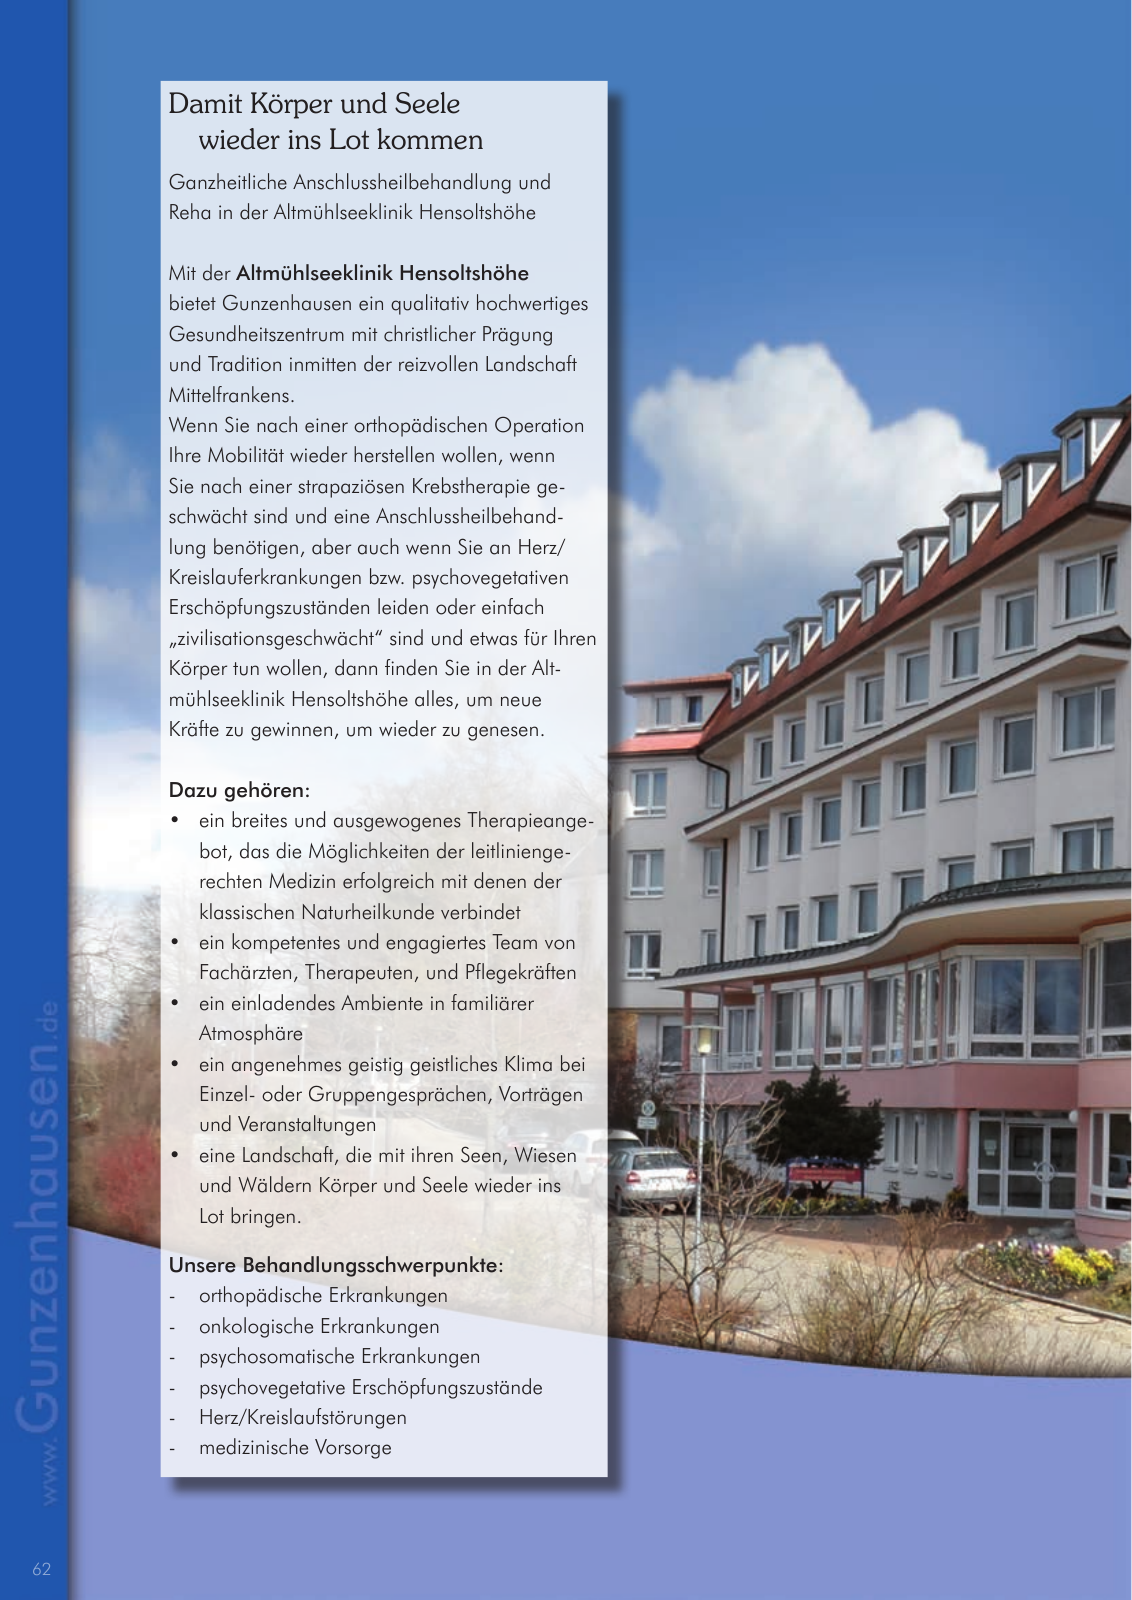 Vorschau leben & arbeiten in Gunzenhausen - 2015 Seite 62